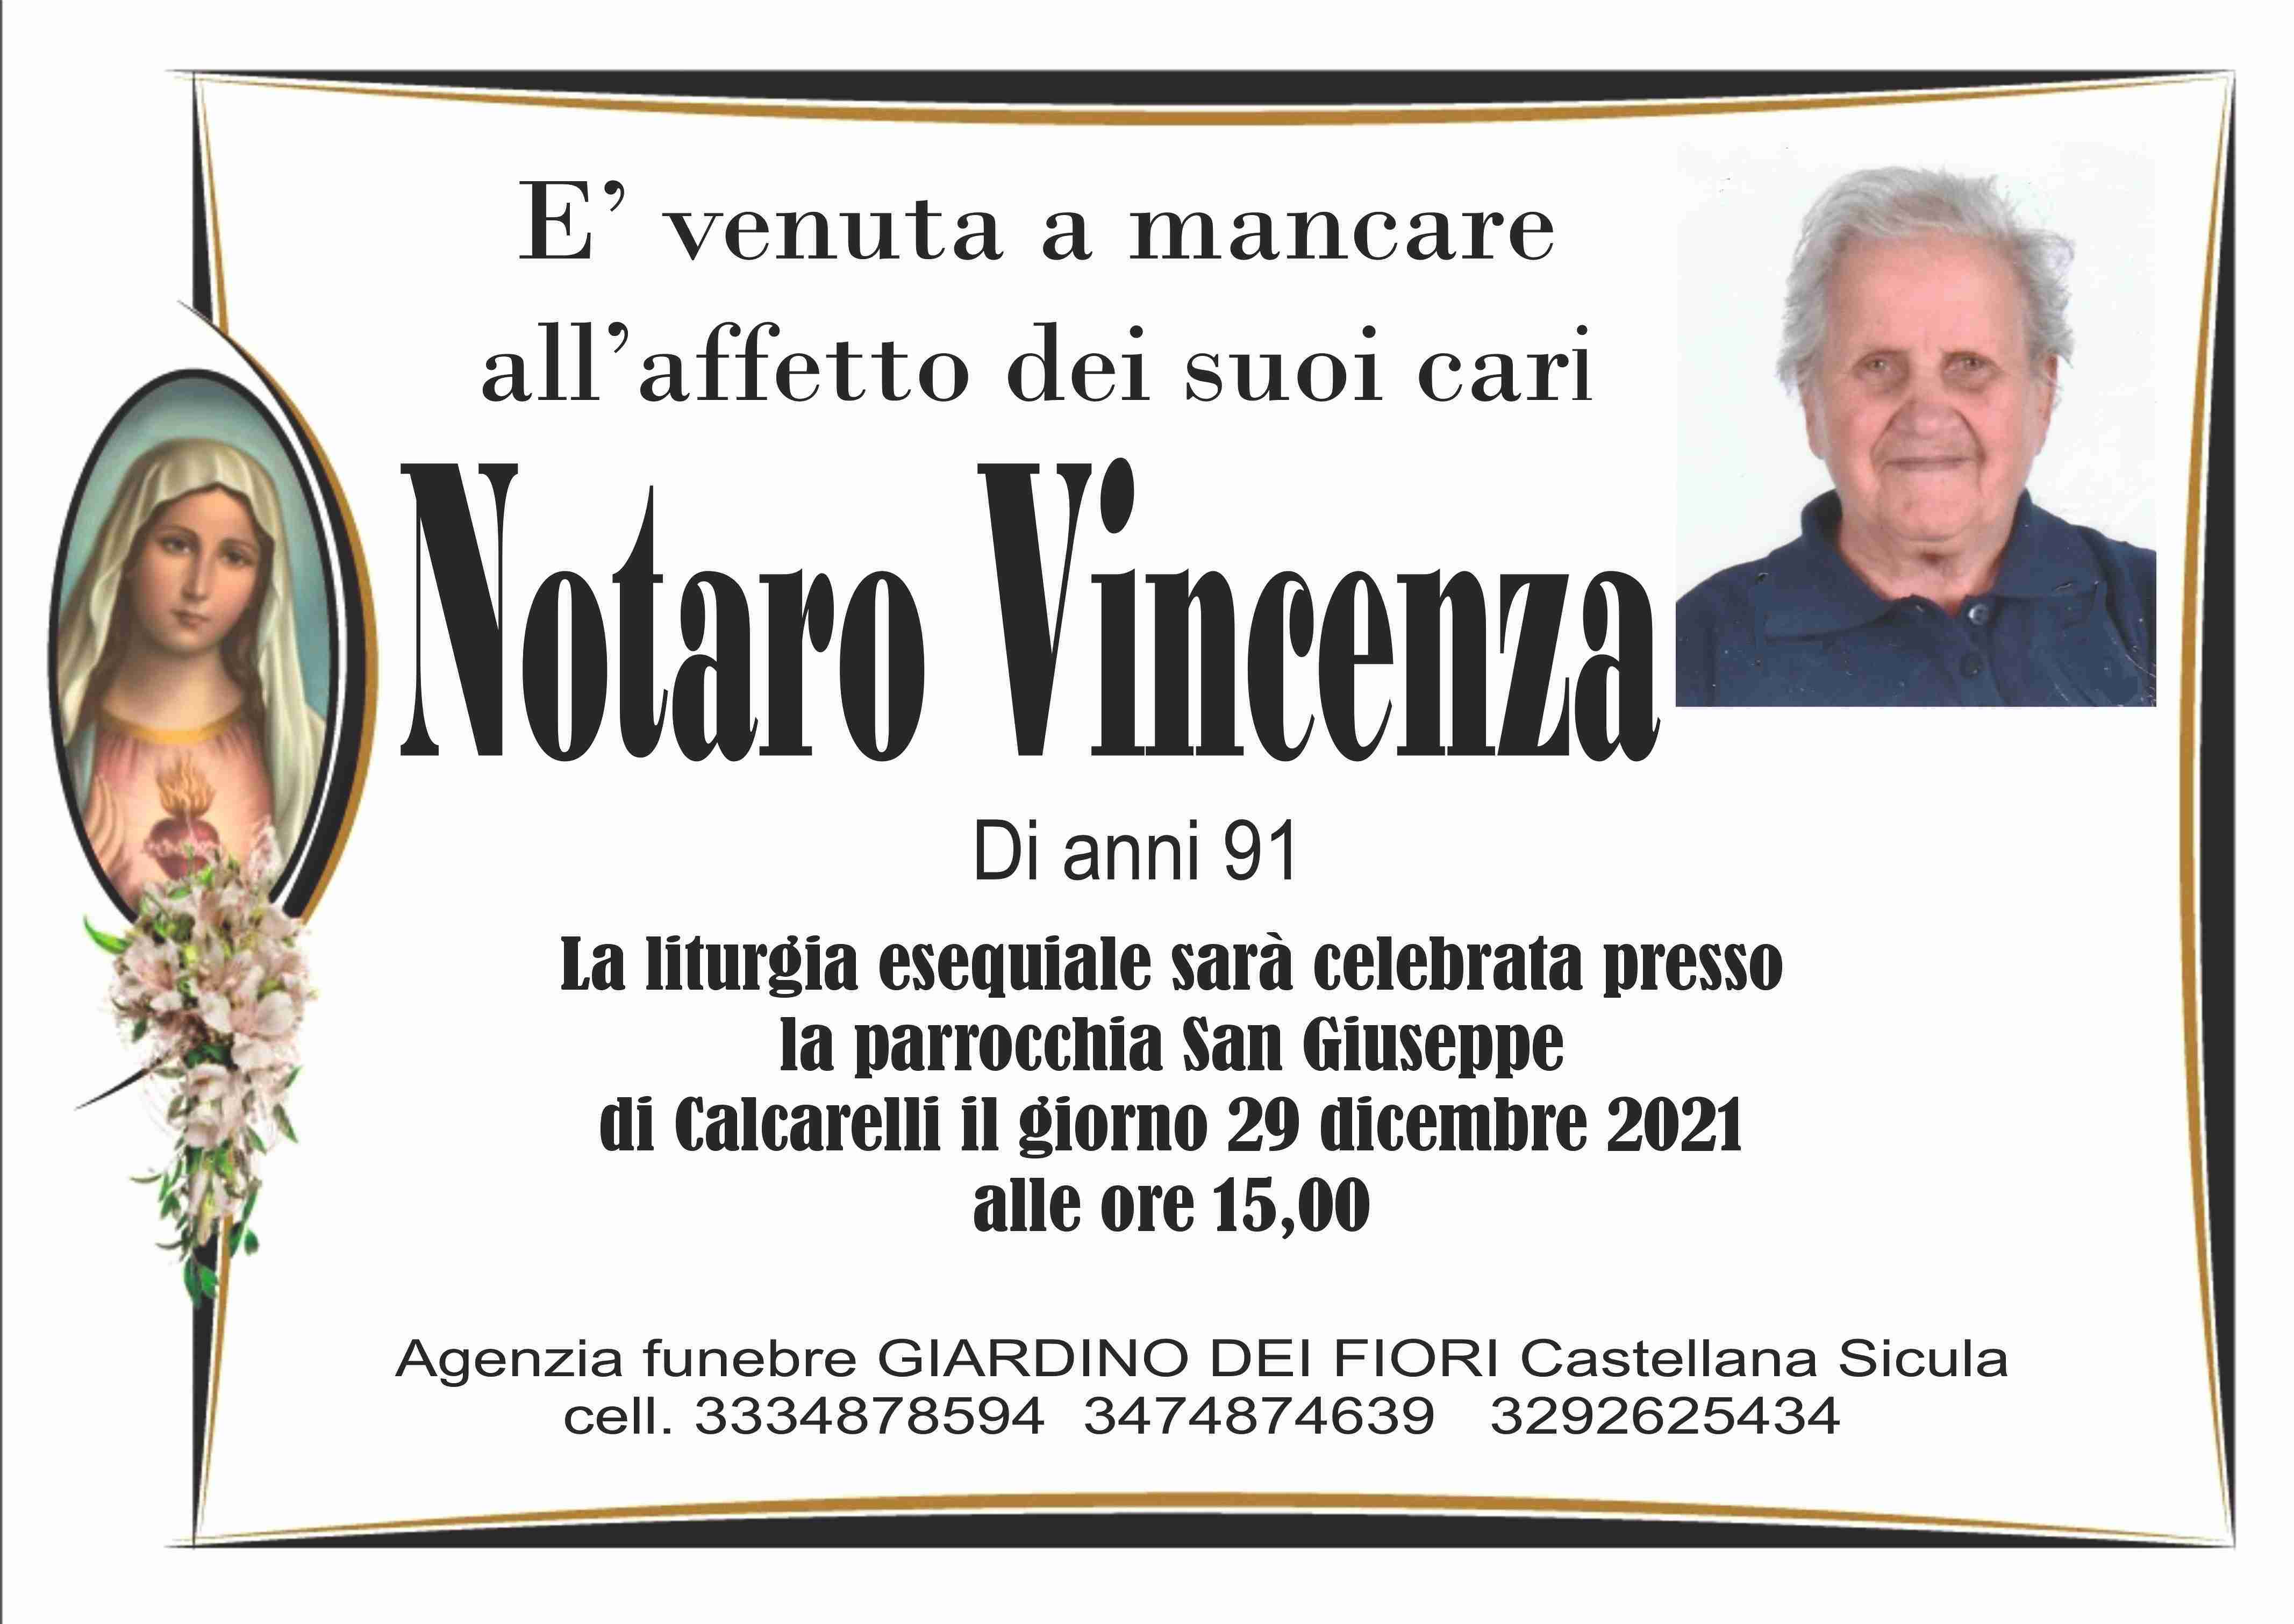 Vincenza Notaro